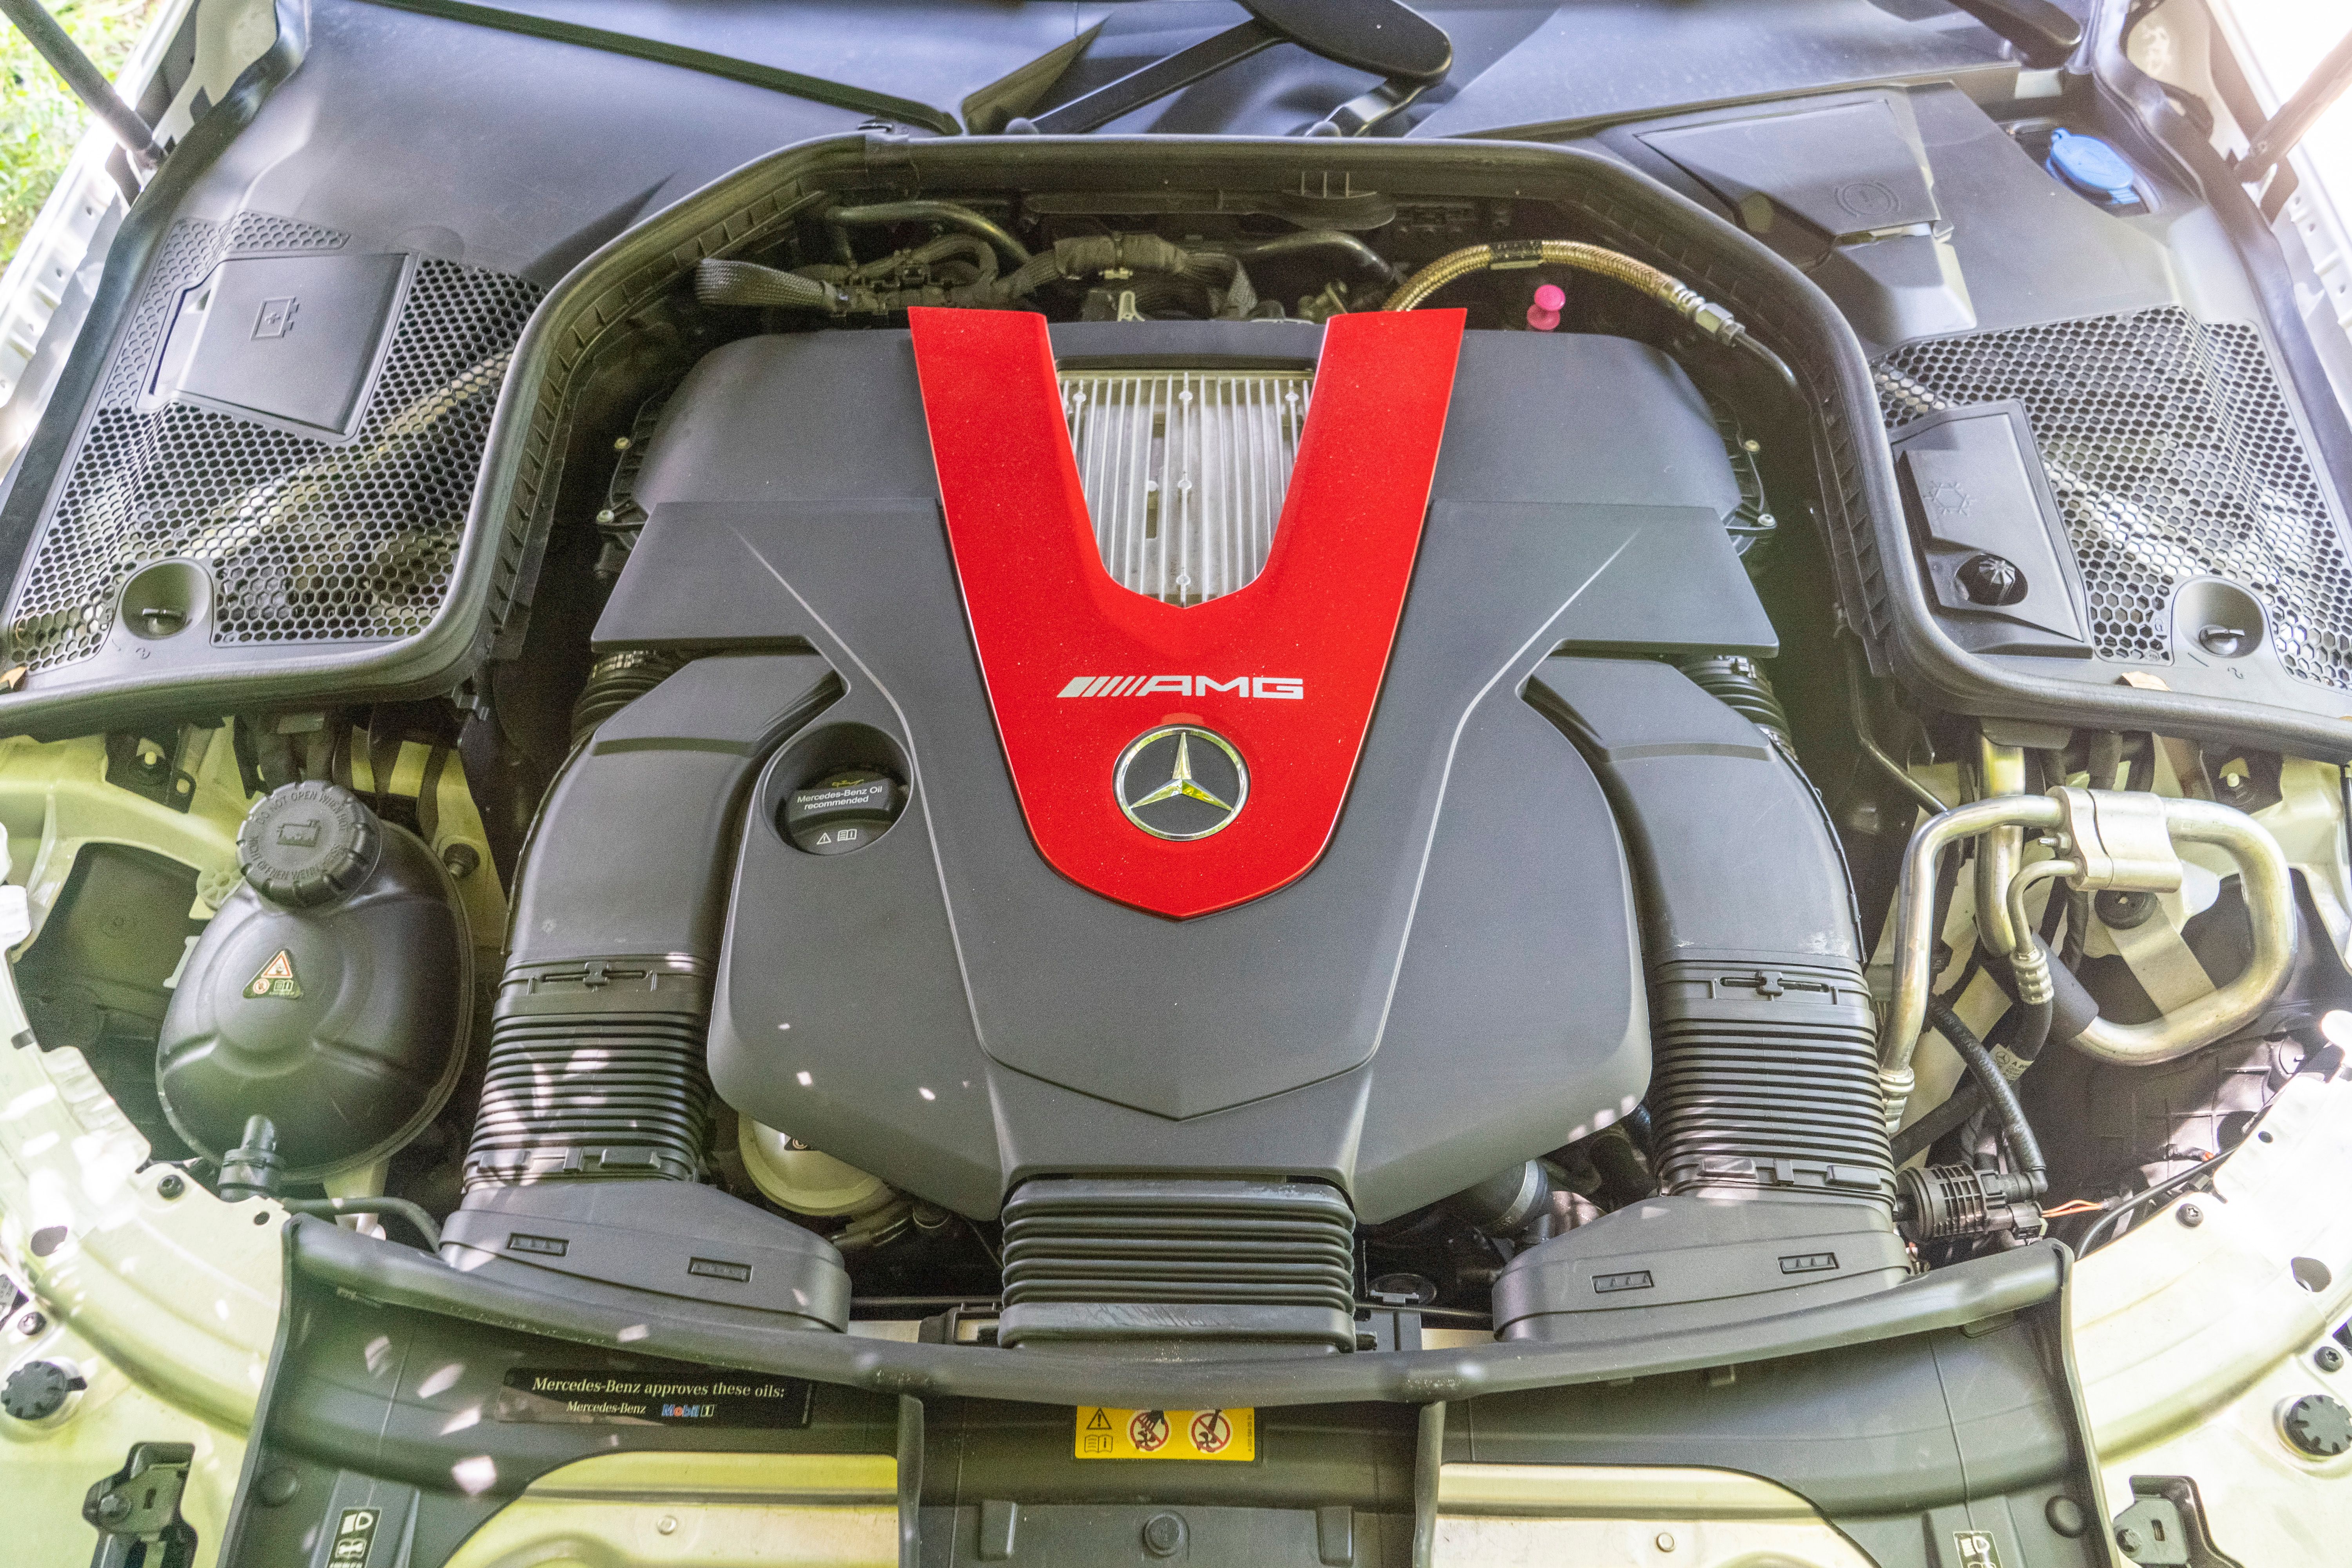 2019 Mercedes-AMG C43 Convertible - Driven